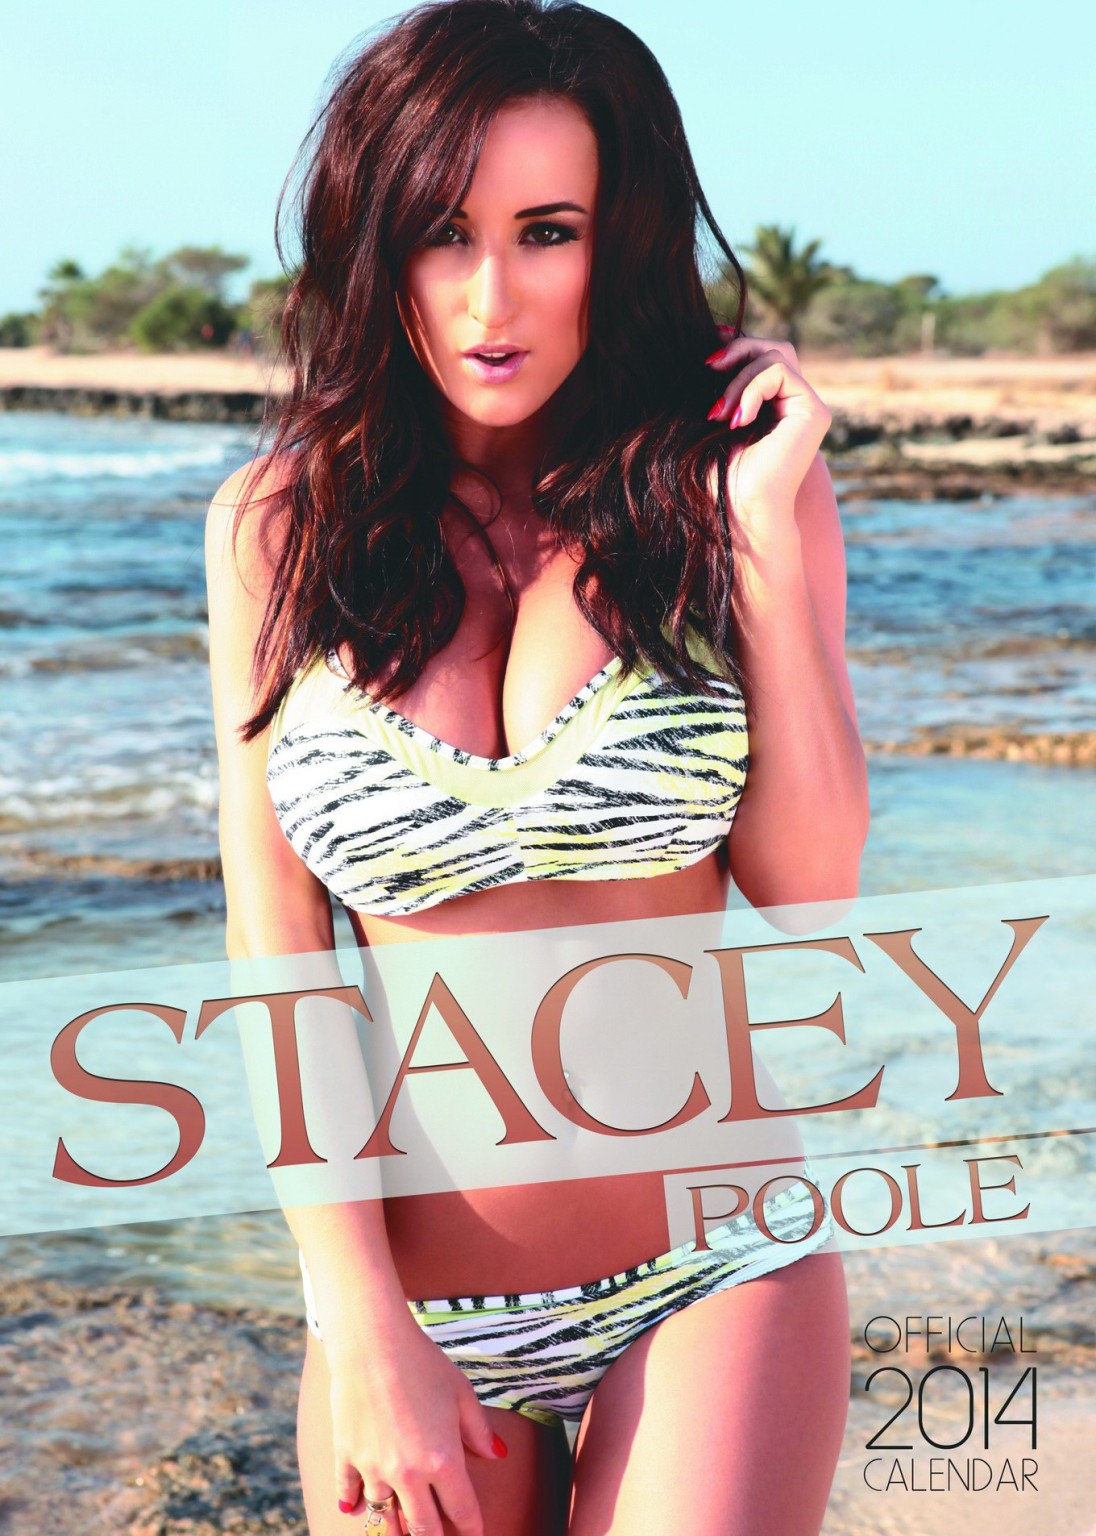 Stacey Poole zeigt ihre riesigen Brüste, versteckt aber ihre Muschi in ihrem offiziellen 2014er C
 #75217558